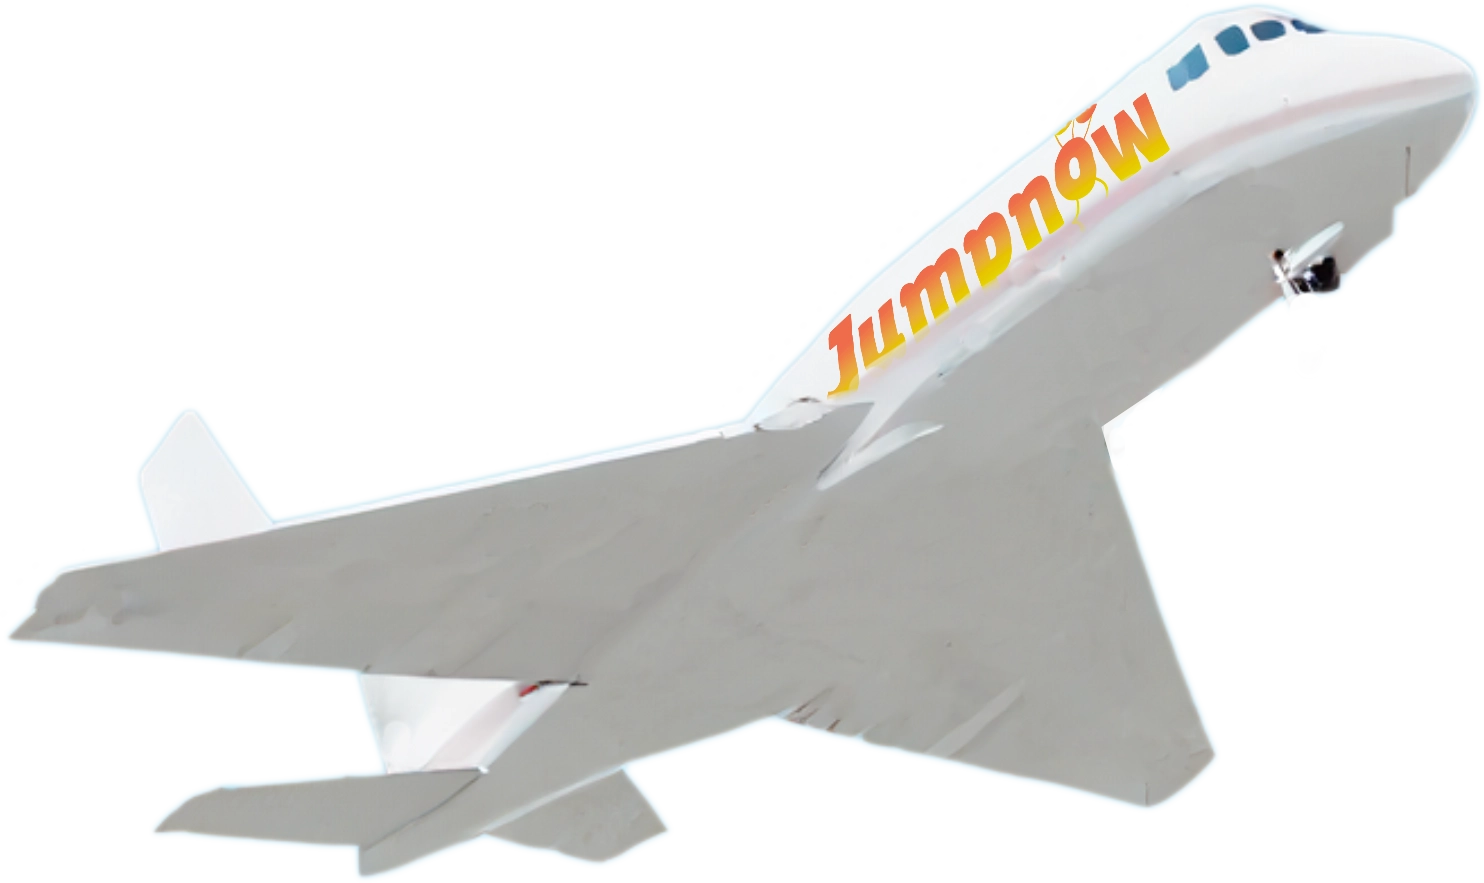 Avion de saut en parachute blanc avec logo JumpNow en vol, prêt pour les aventures de parachutisme